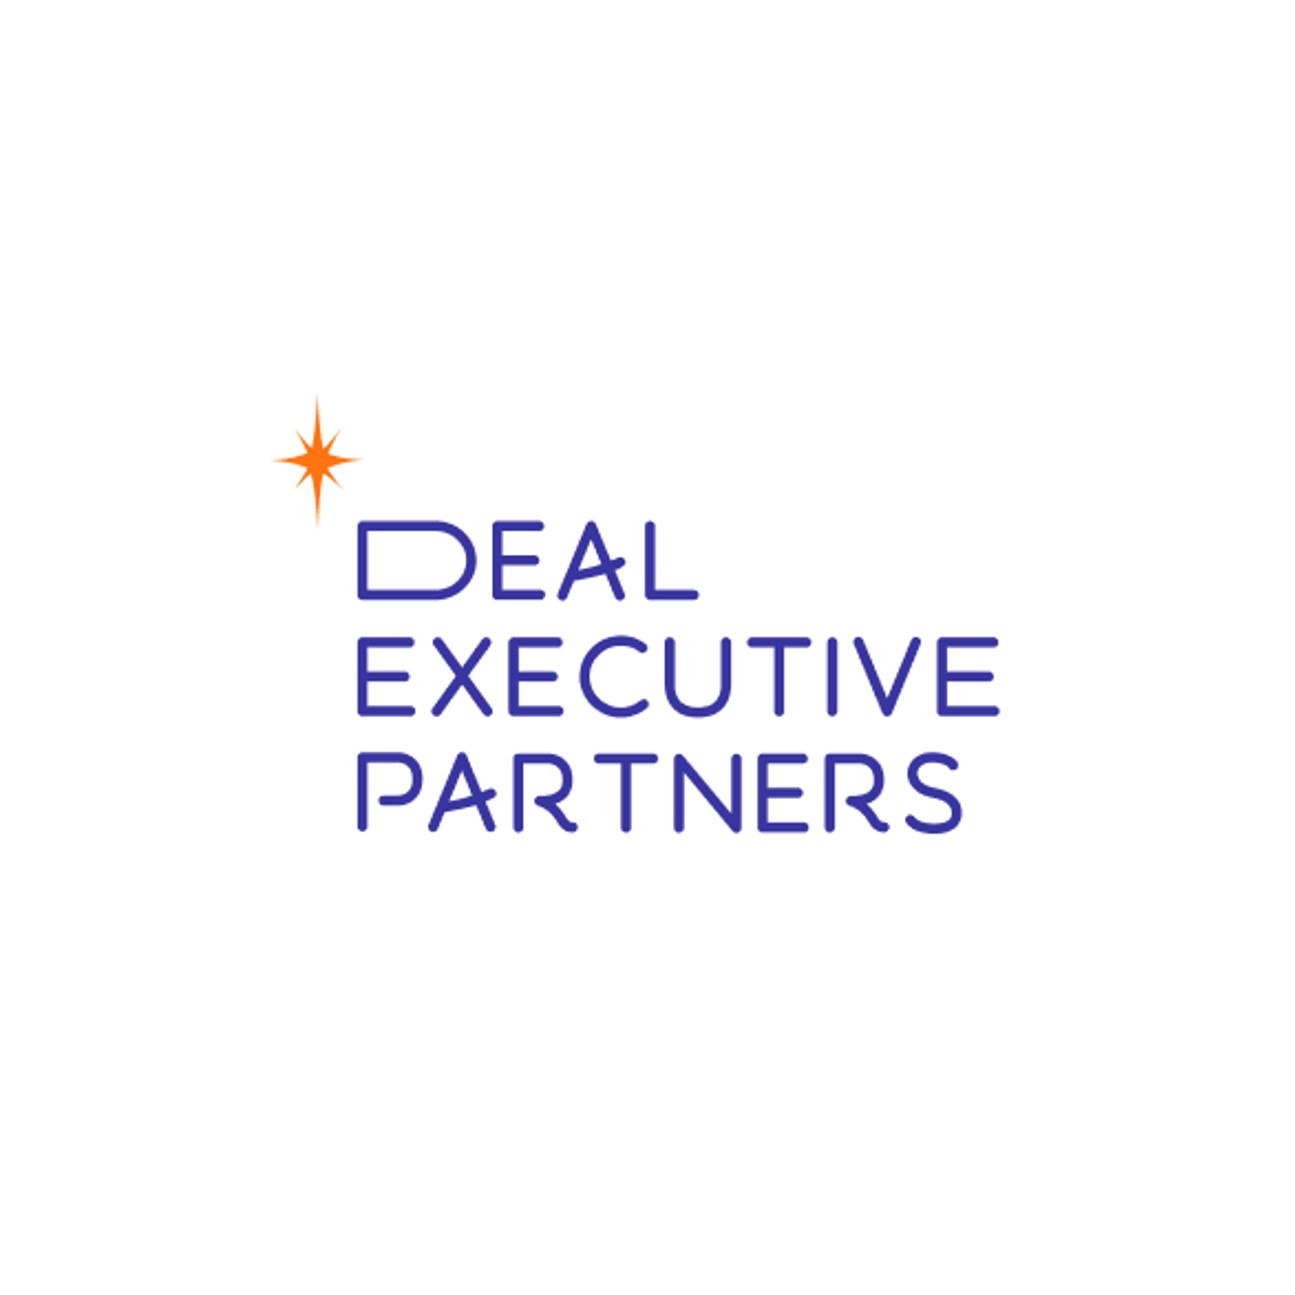 Deal Executive Partners